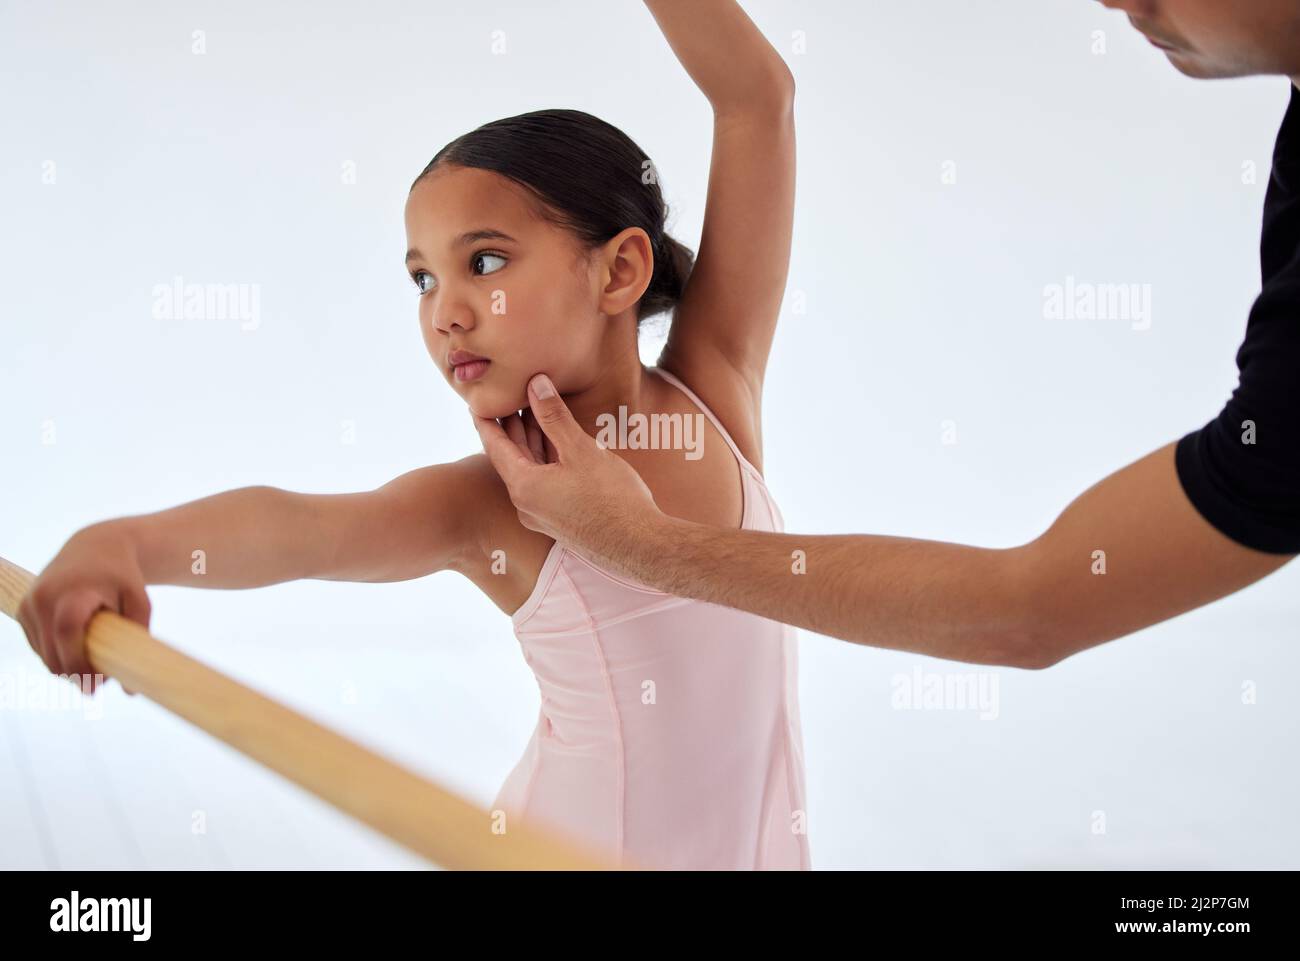 Guarda in questo modo. Primo piano di un insegnante di balletto che assiste uno studente con la sua posizione in uno studio di danza. Foto Stock